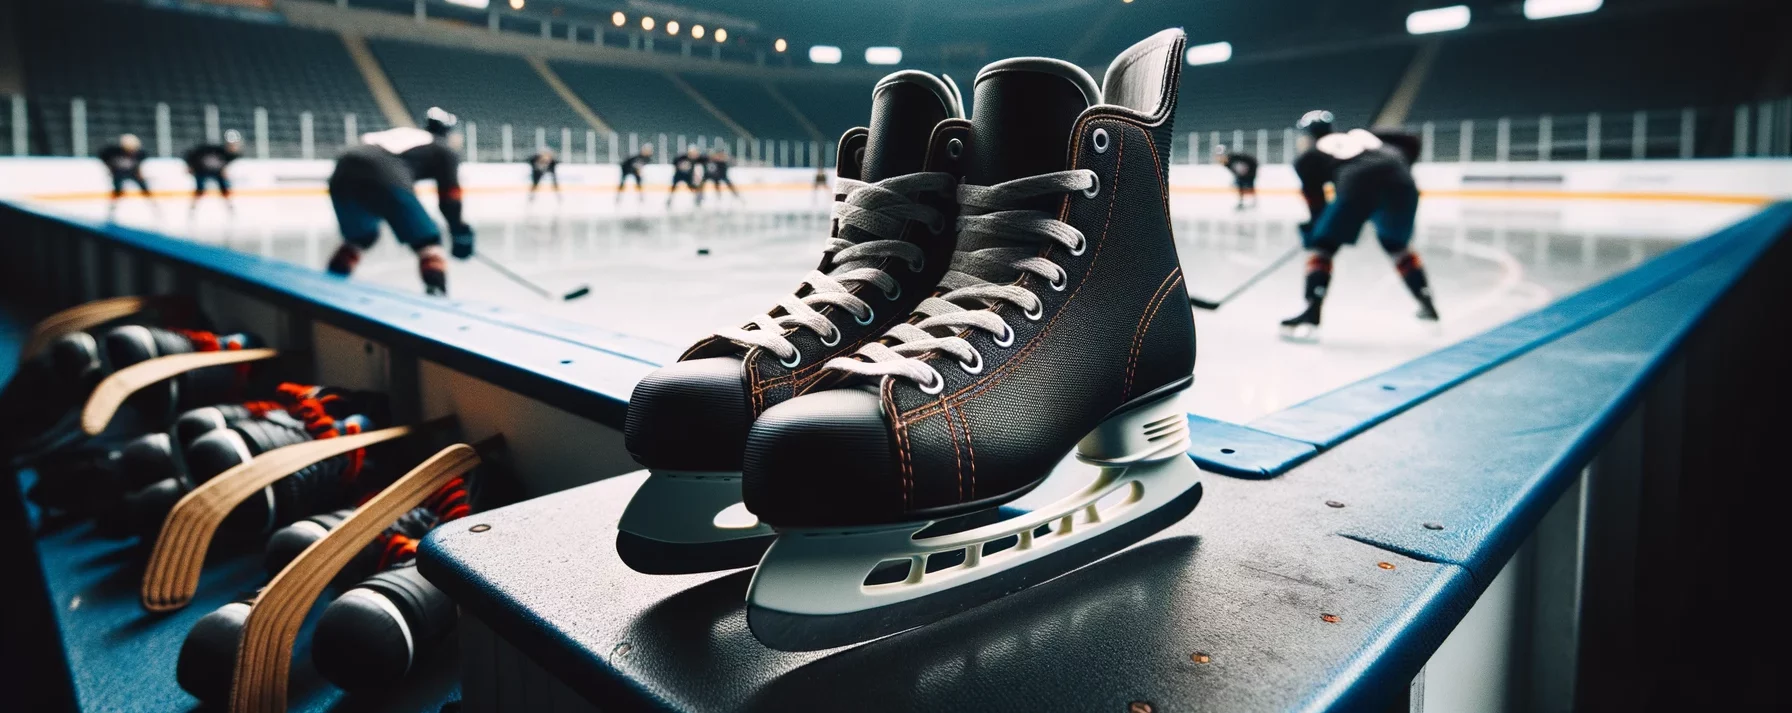 Foto von einem Paar professioneller Eishockey-Schlittschuhe, die ordentlich auf der Bank eines Eishockeystadions platziert sind.